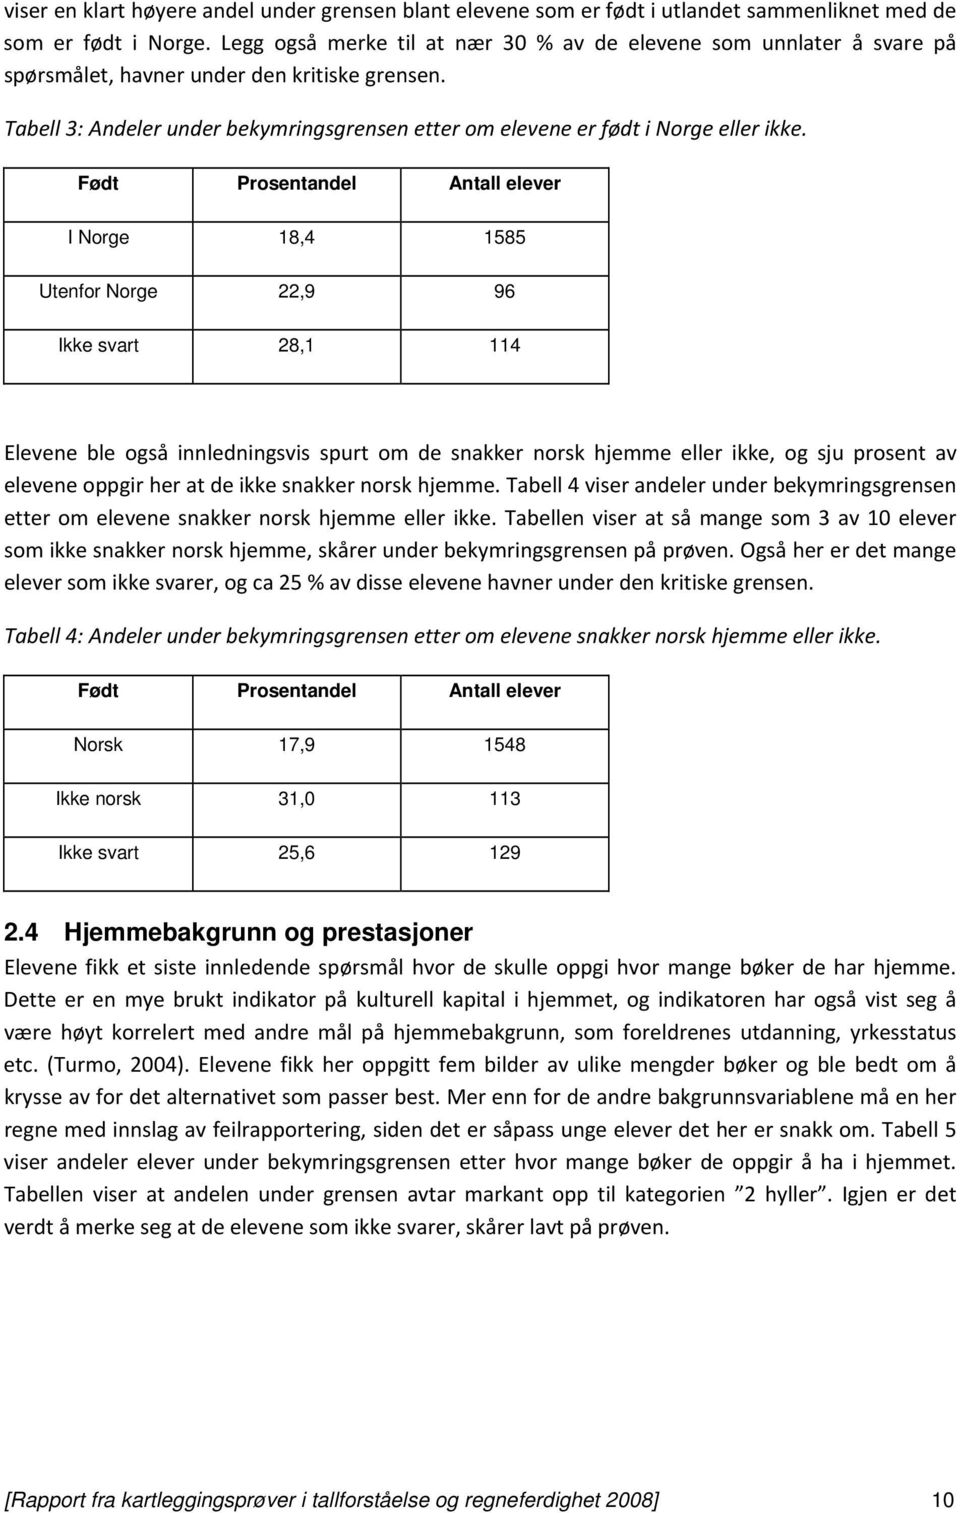 Tabell 3: Andeler under bekymringsgrensen etter om elevene er født i Norge eller ikke.